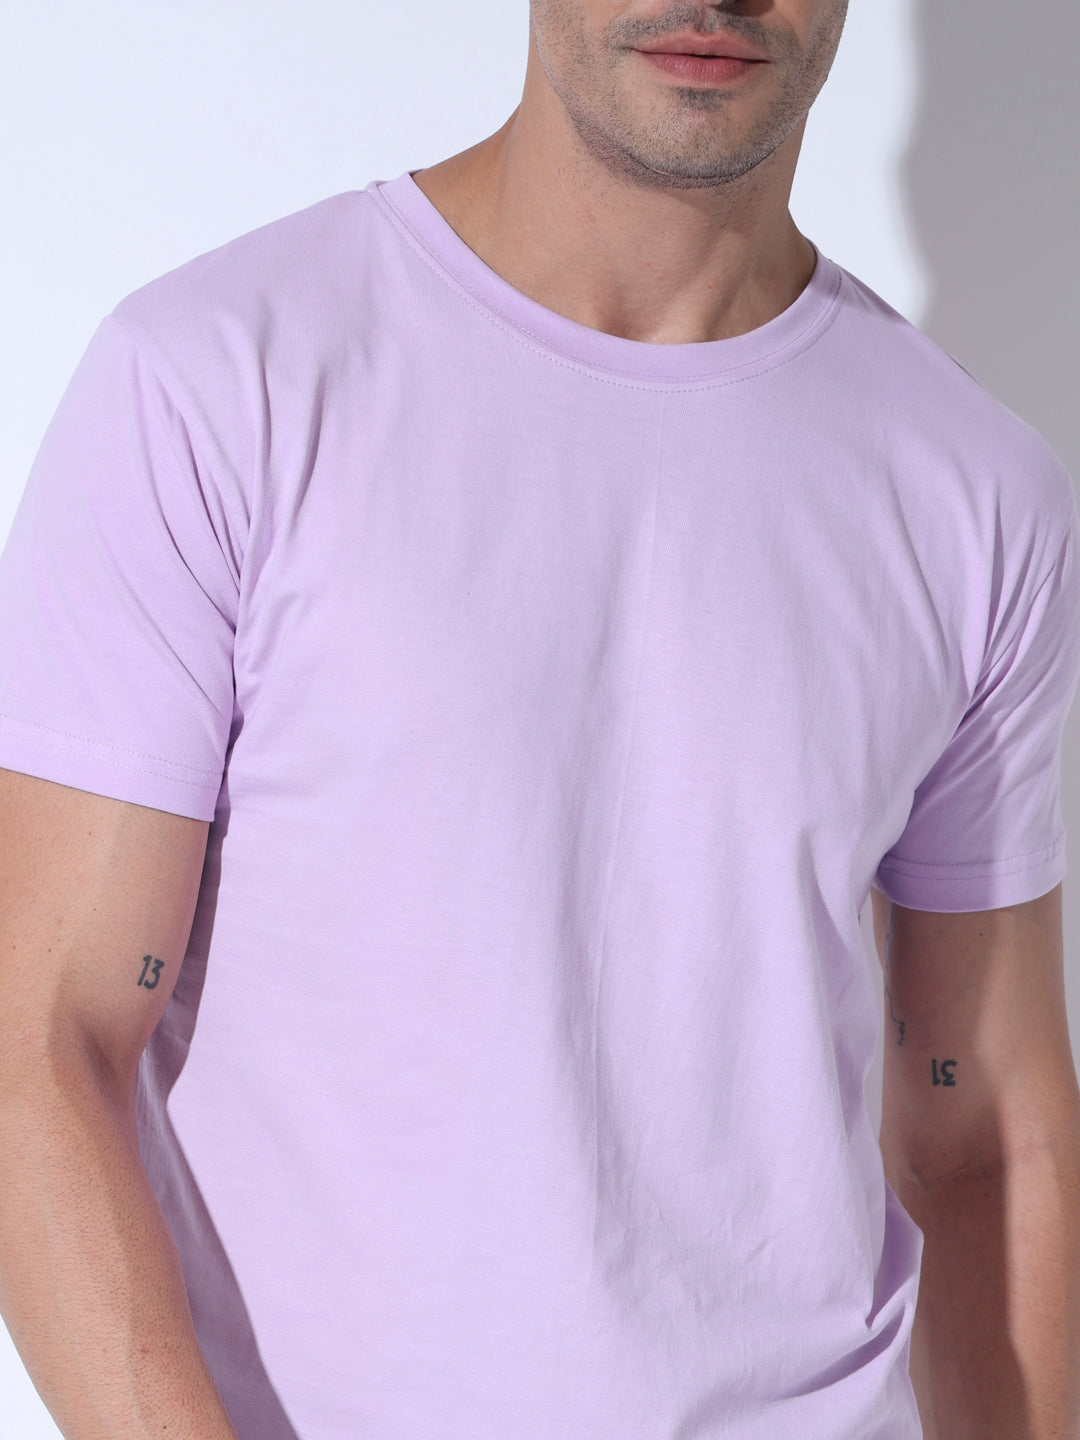 Classy Lavender  Tshirt